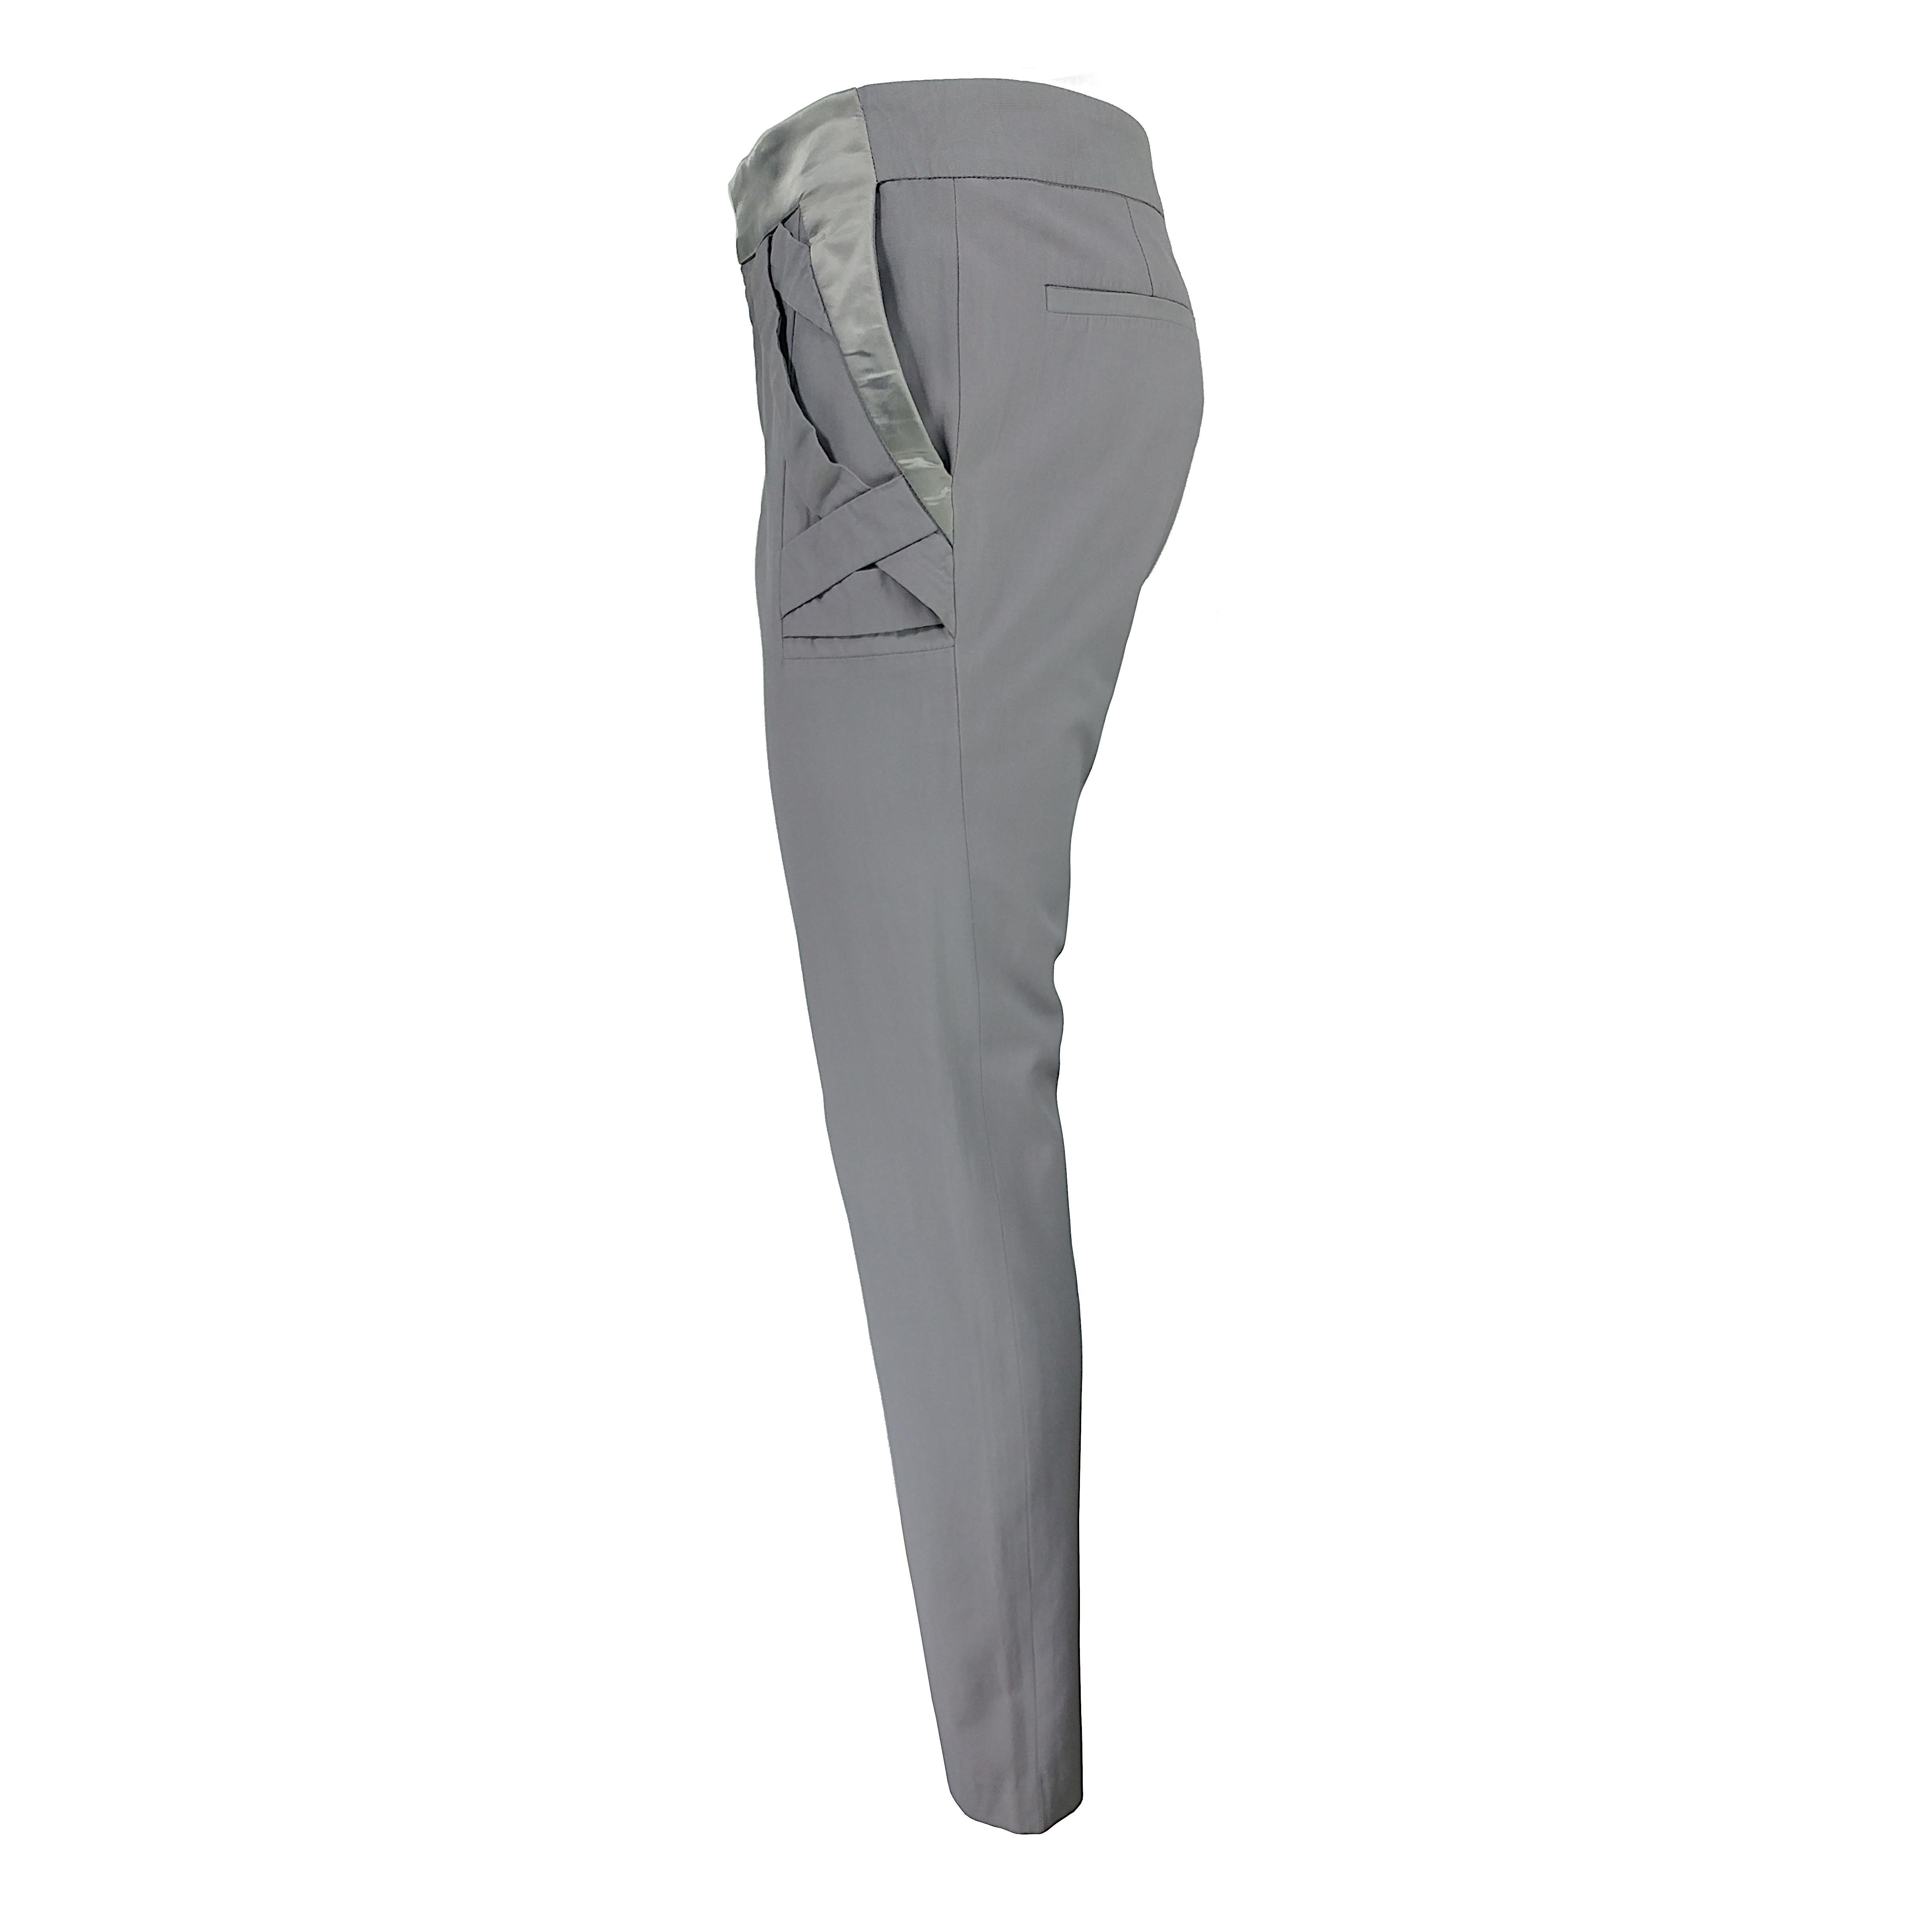 Un pantalon très spécial conçu par Frida Giannini pour Gucci en 2009, présentant trois bandes se croisant à partir de la ceinture sur le devant. Le pantalon a un design fuselé, la fermeture de l'ourlet est zippée avec le logo Gucci sur la tirette.